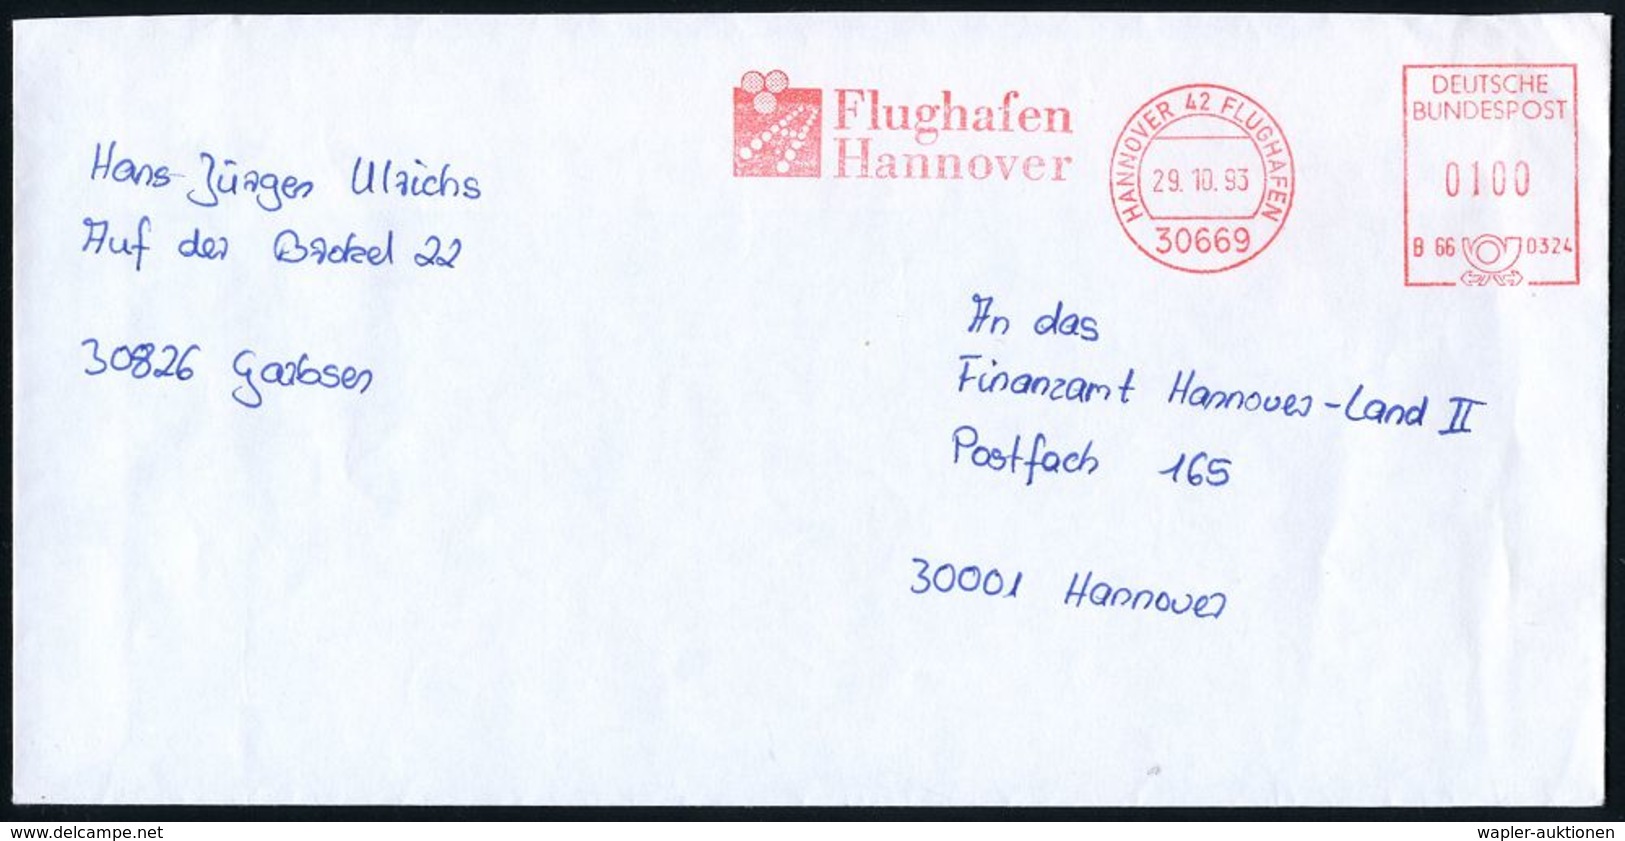 FLUGHAFEN / FLUGHAFEN-POSTÄMTER : 3000 #bzw.# 30669 HANNOVER 42-FLUGHAFEN/ B66 0324/ Flughafen/ Hannover 1993 (26.2./29. - Sonstige (Luft)